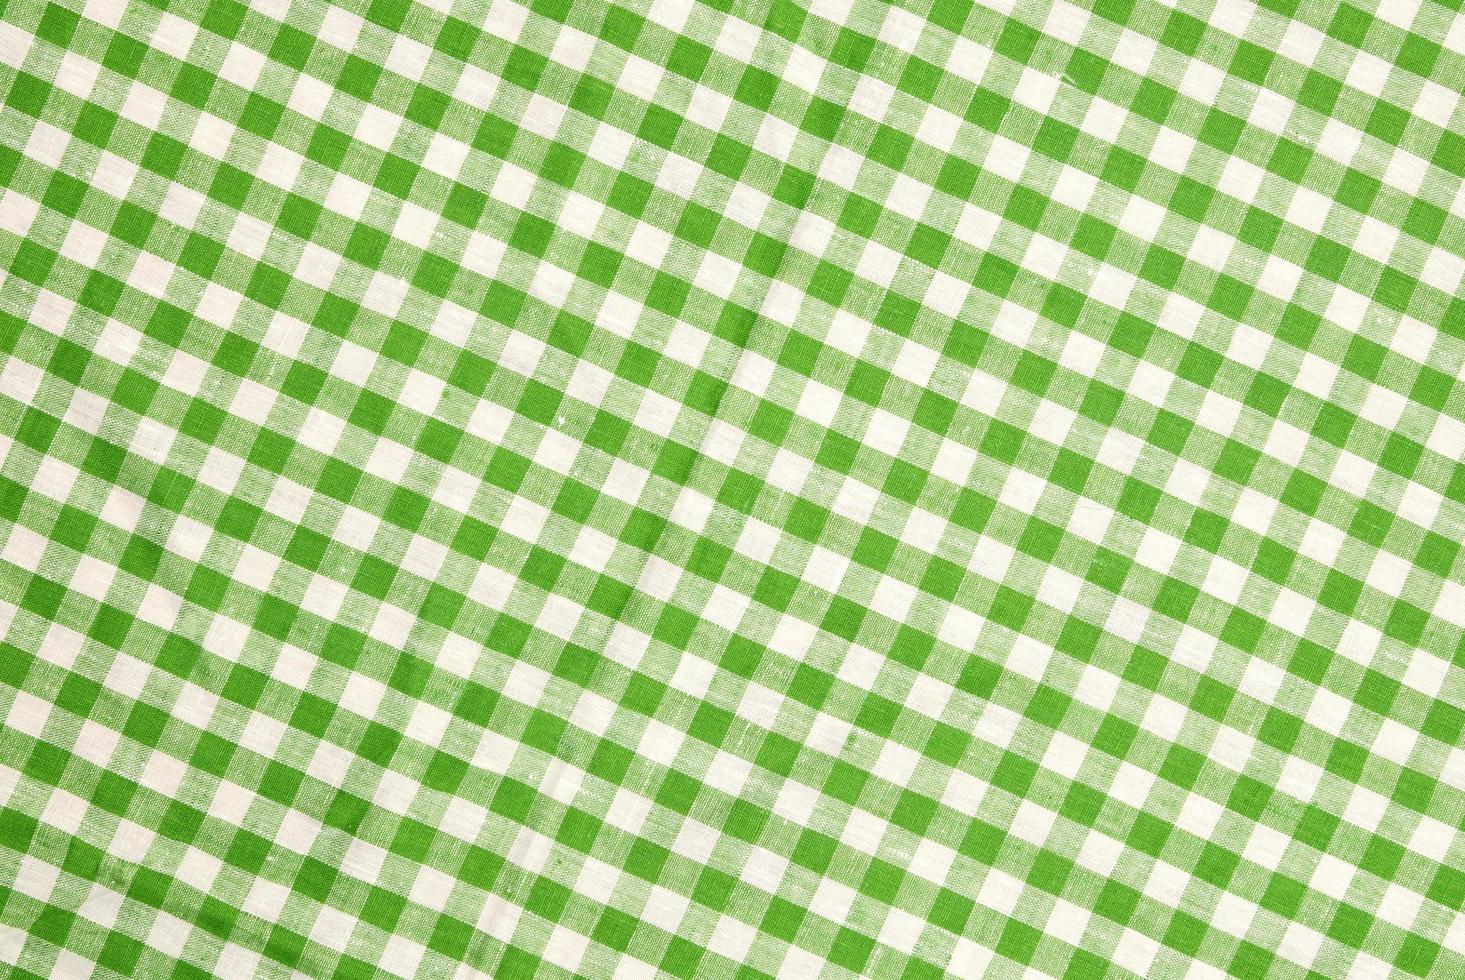 grün karierter Tischdeckenhintergrund foto